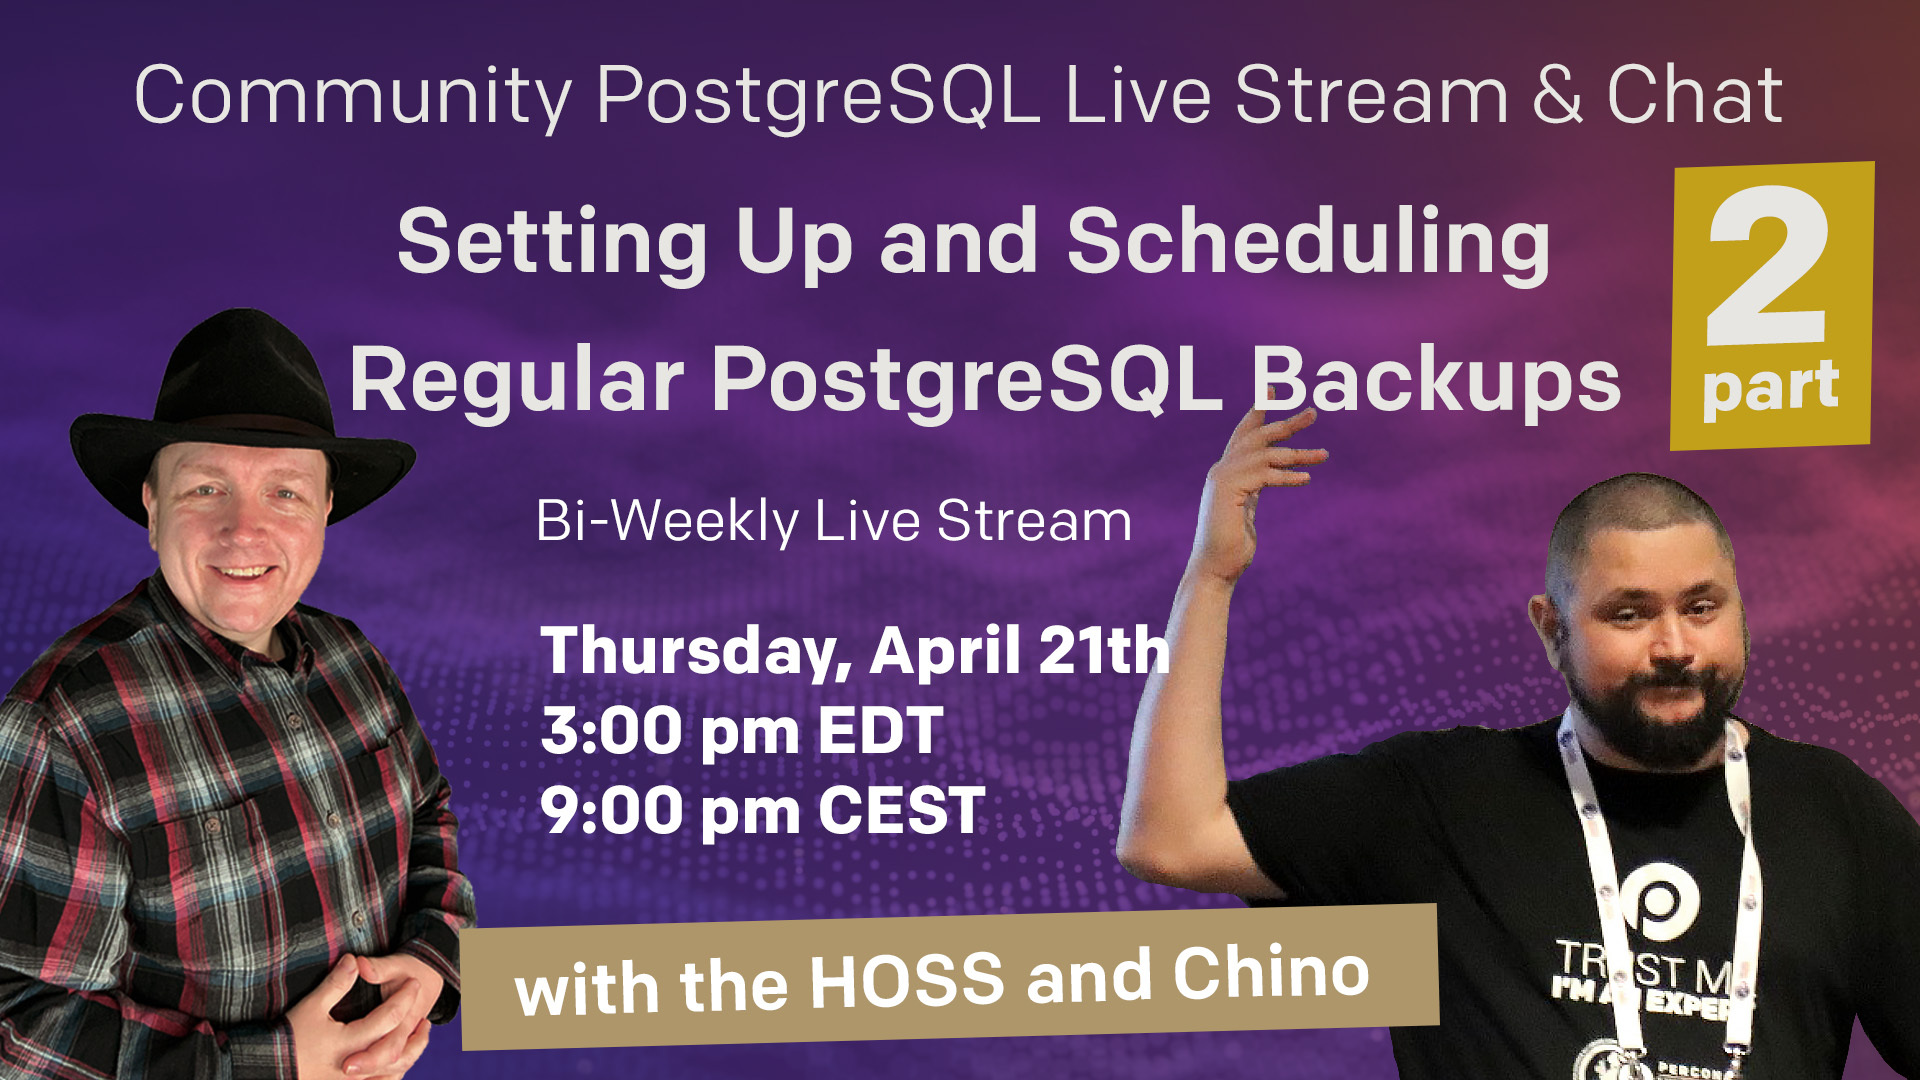 Percona Community PostgreSQL Live Stream & Chat - April 21st